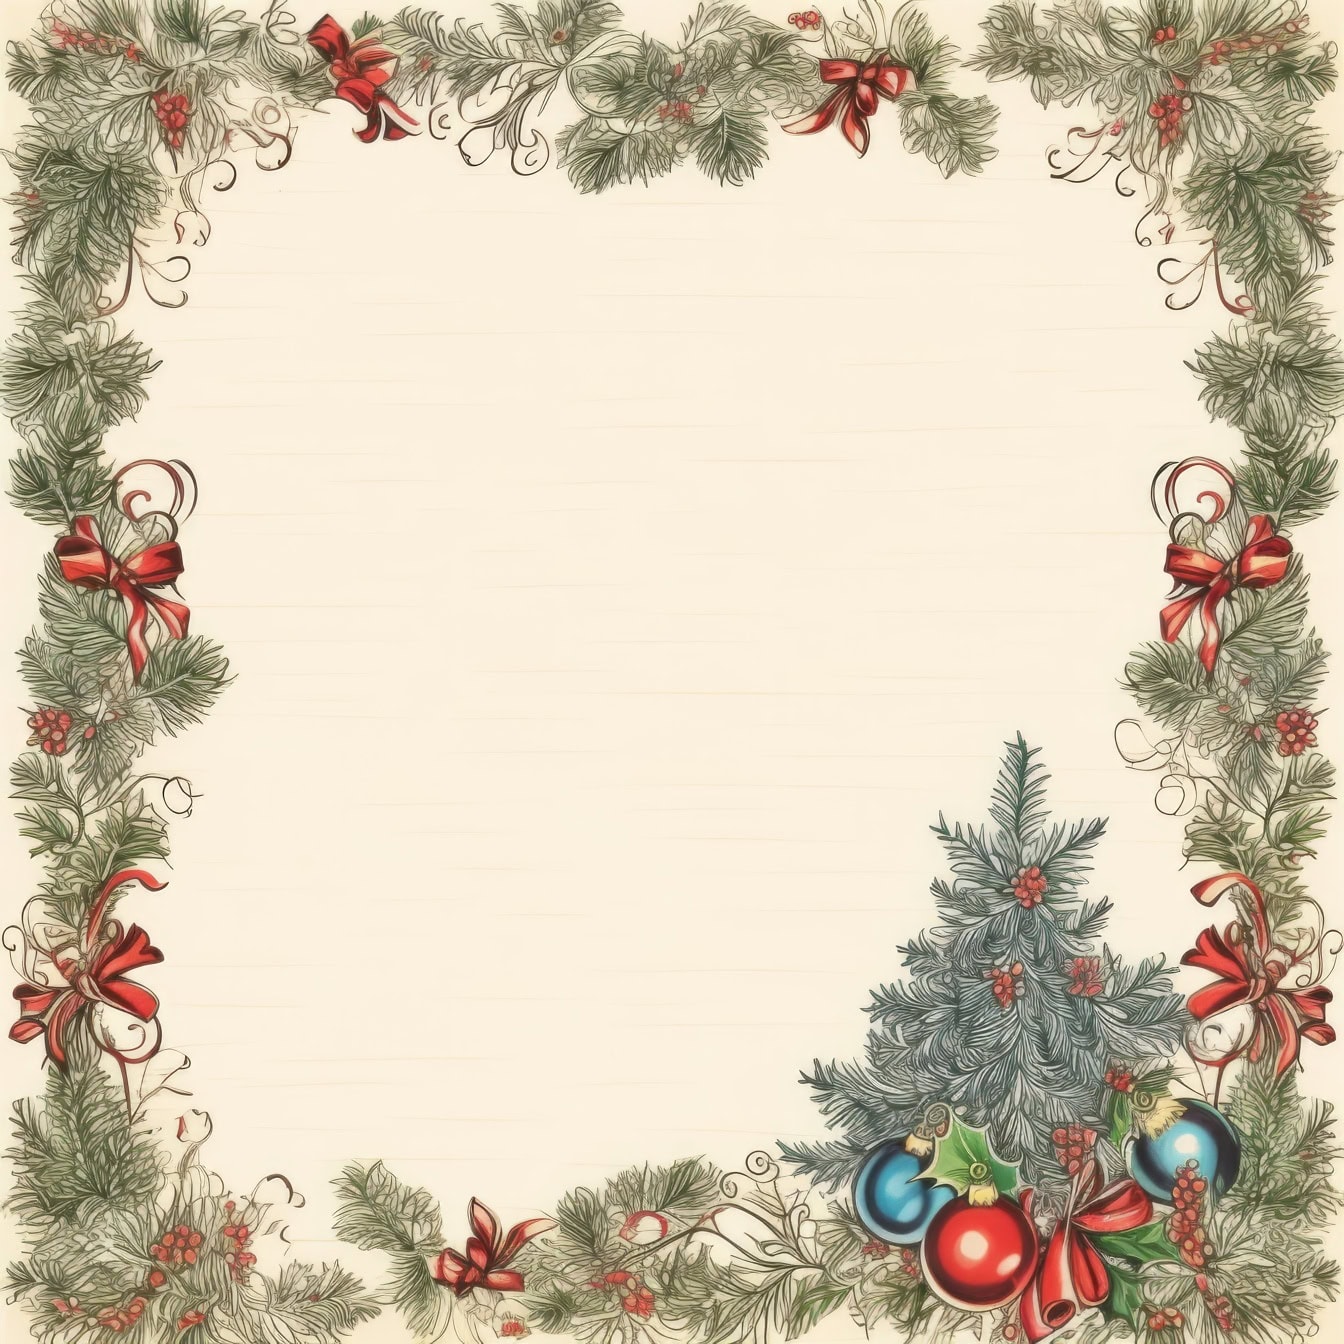 Szablon kartki świątecznej z choinką z ozdobami i kokardkami